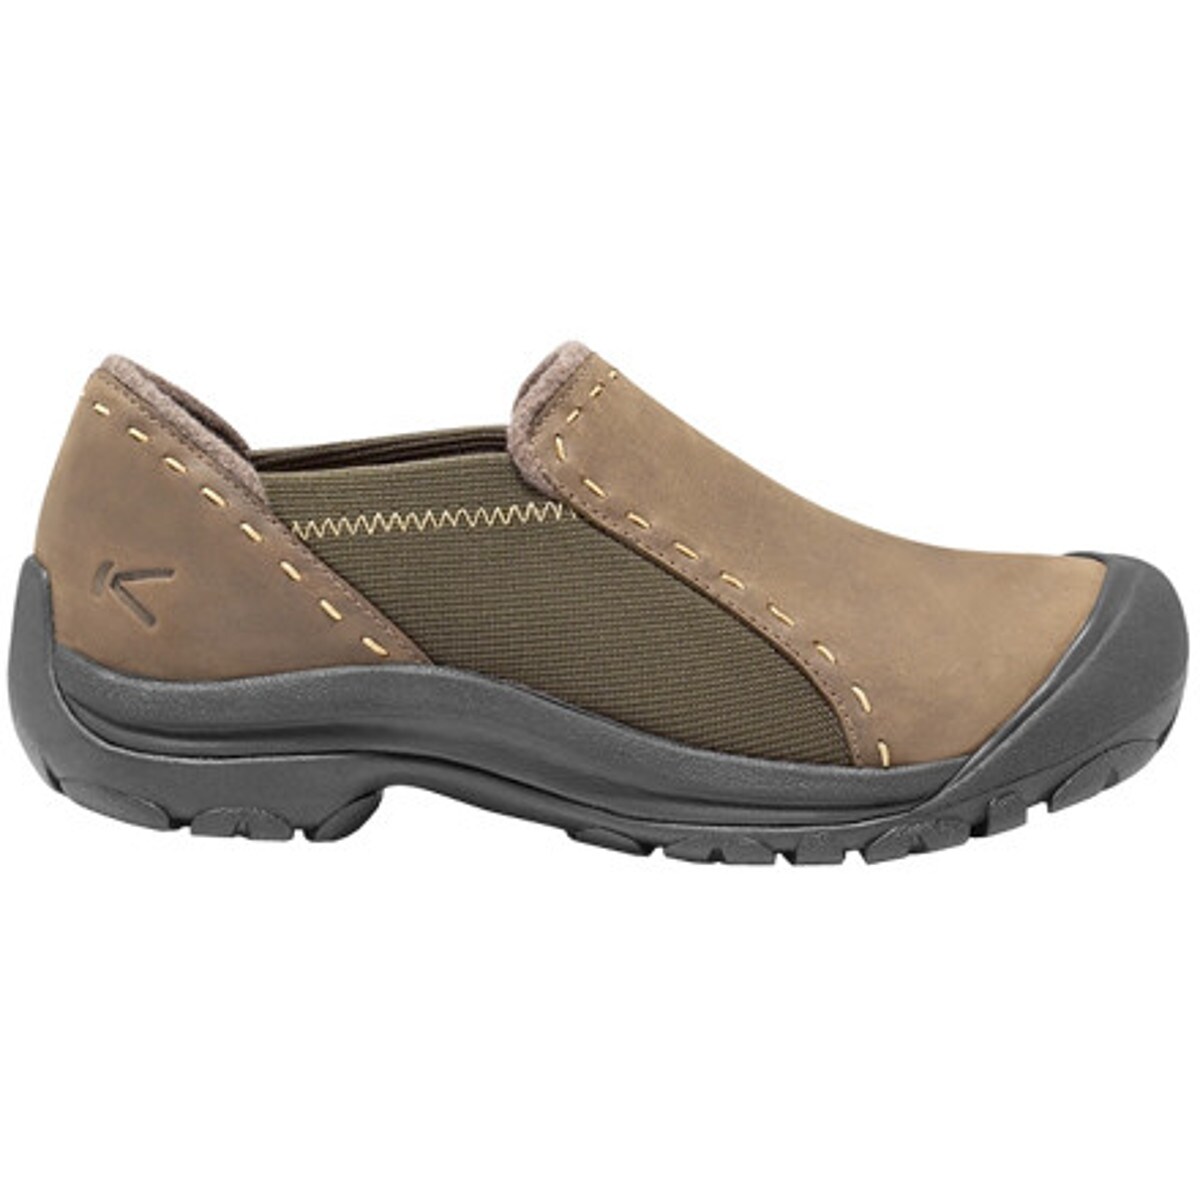 KEEN Winthrop Slip-On Shoe - Women's - Footwear